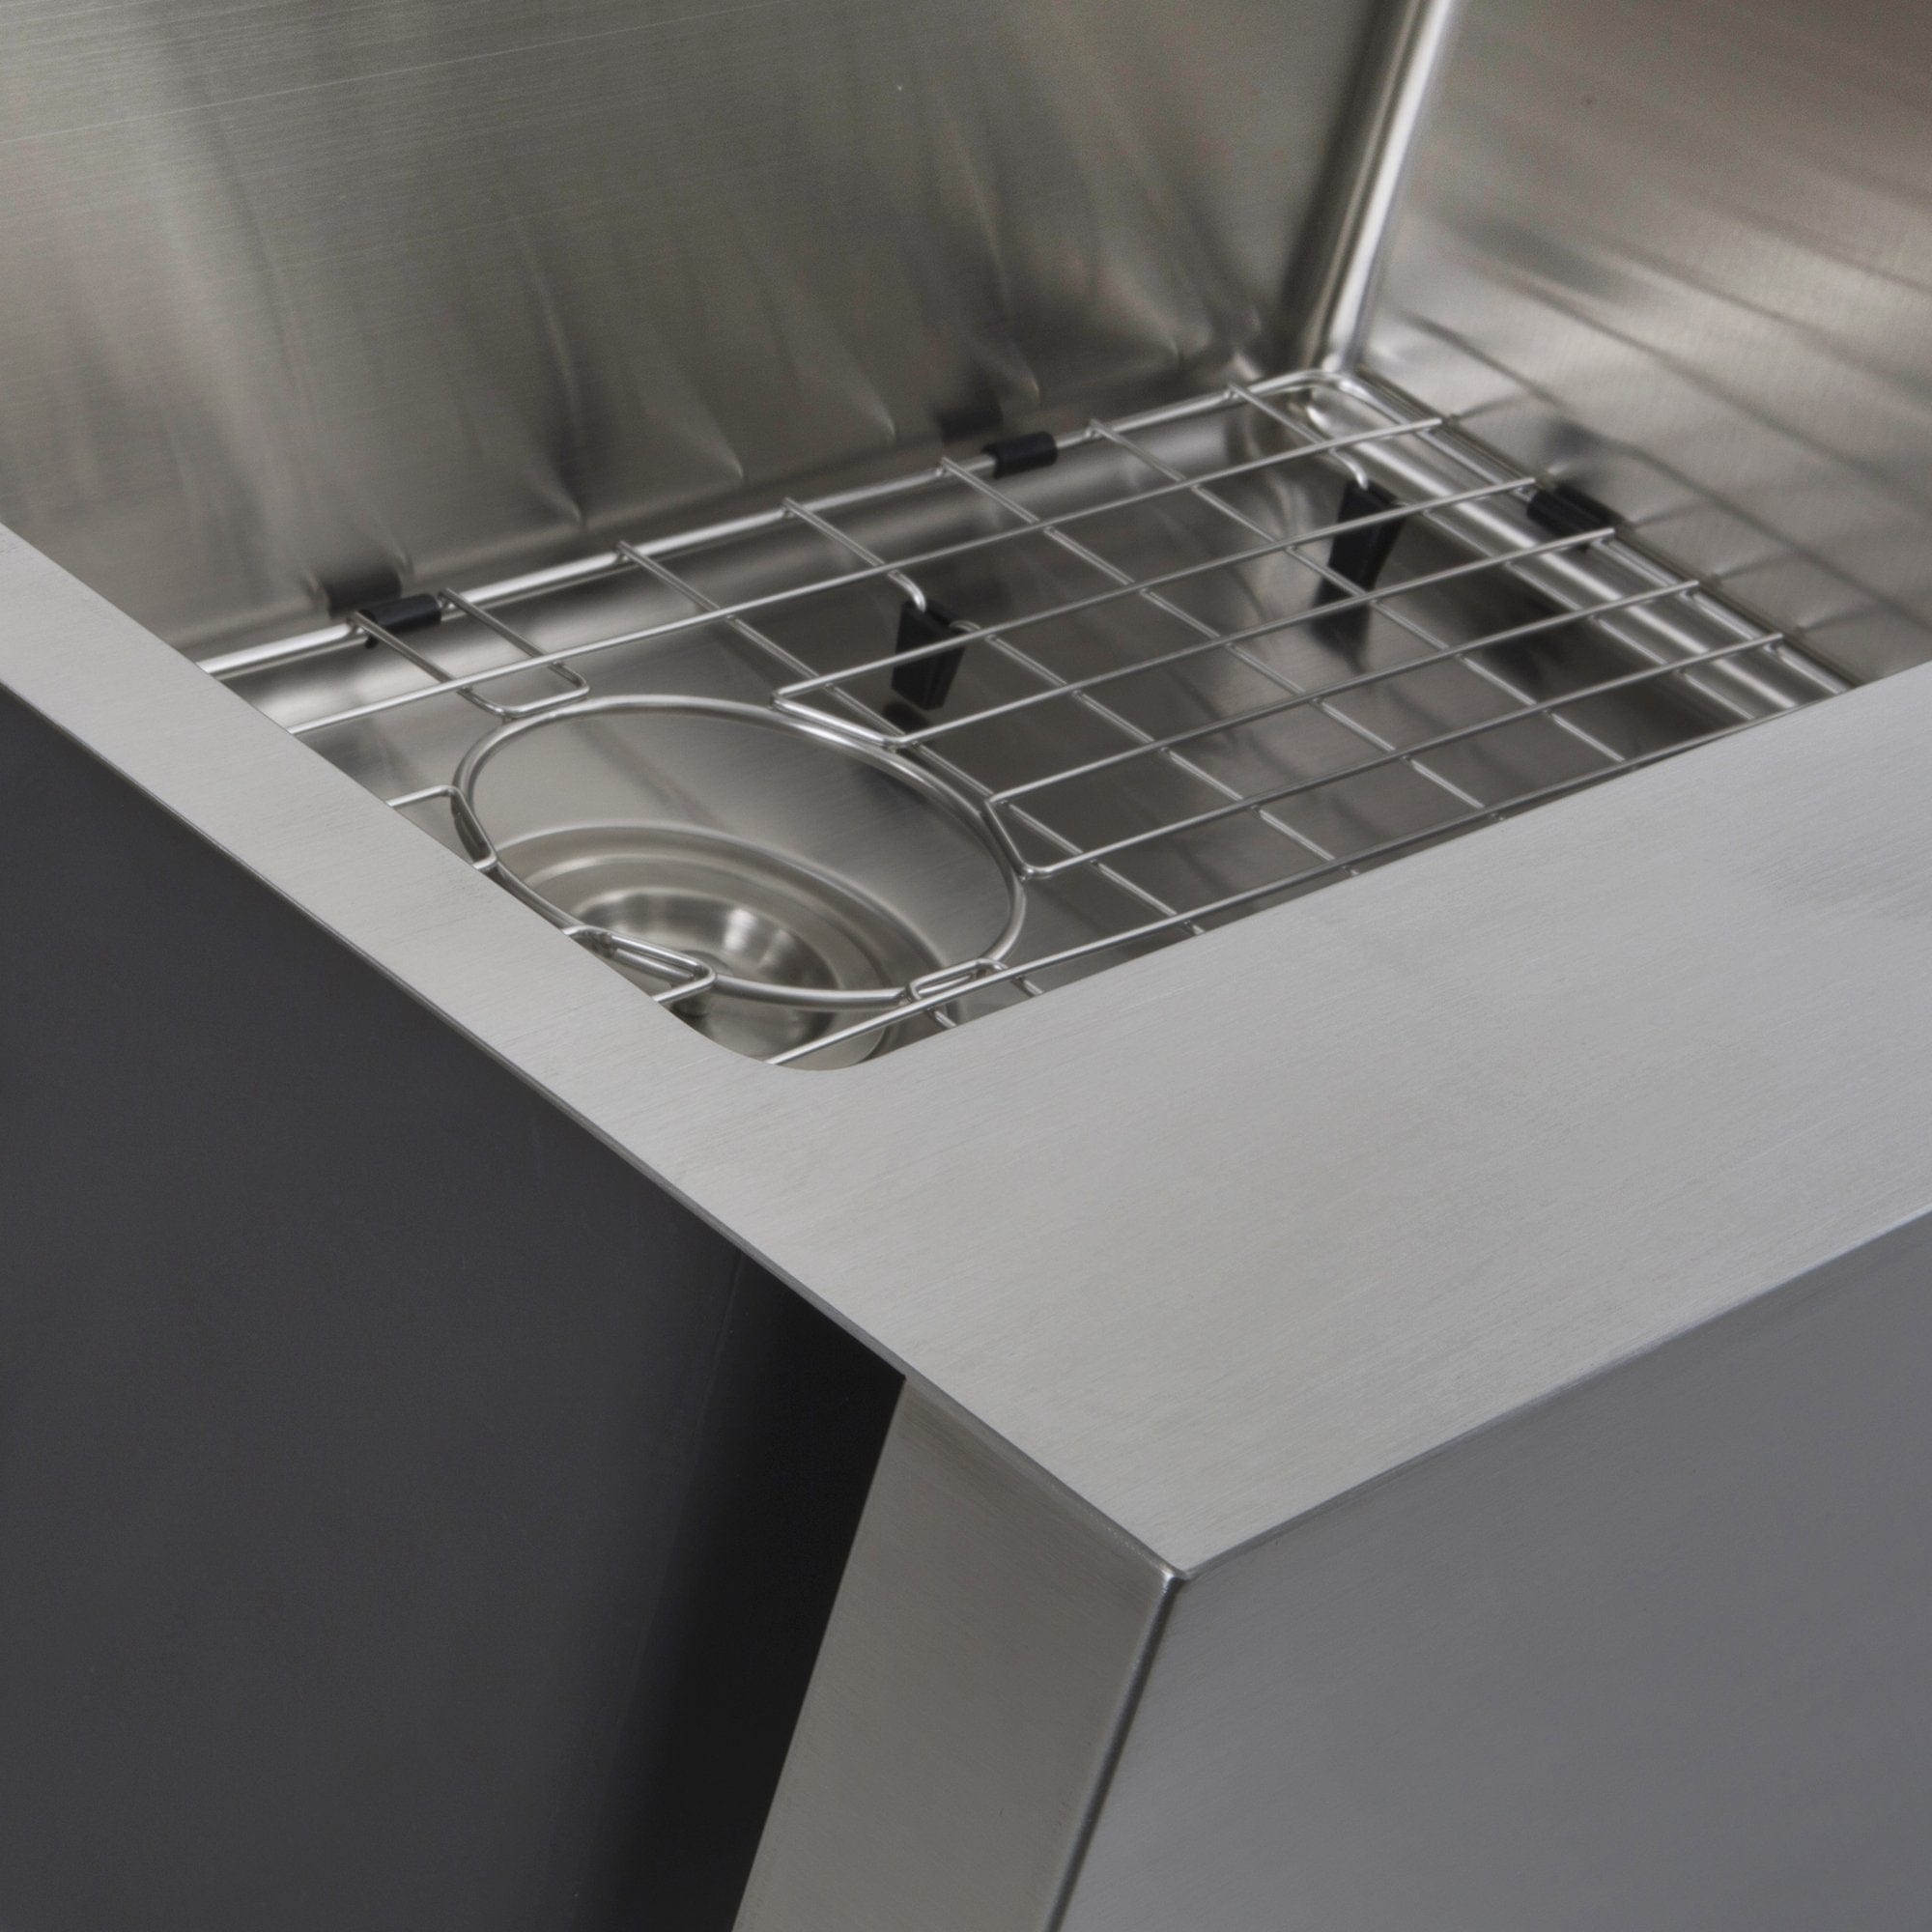 Nantucket EZApron33 Patented Design Pro Series Single Bowl Undermount Stainless Steel Kitchen Sink with 7" Apron Front - EZApron33